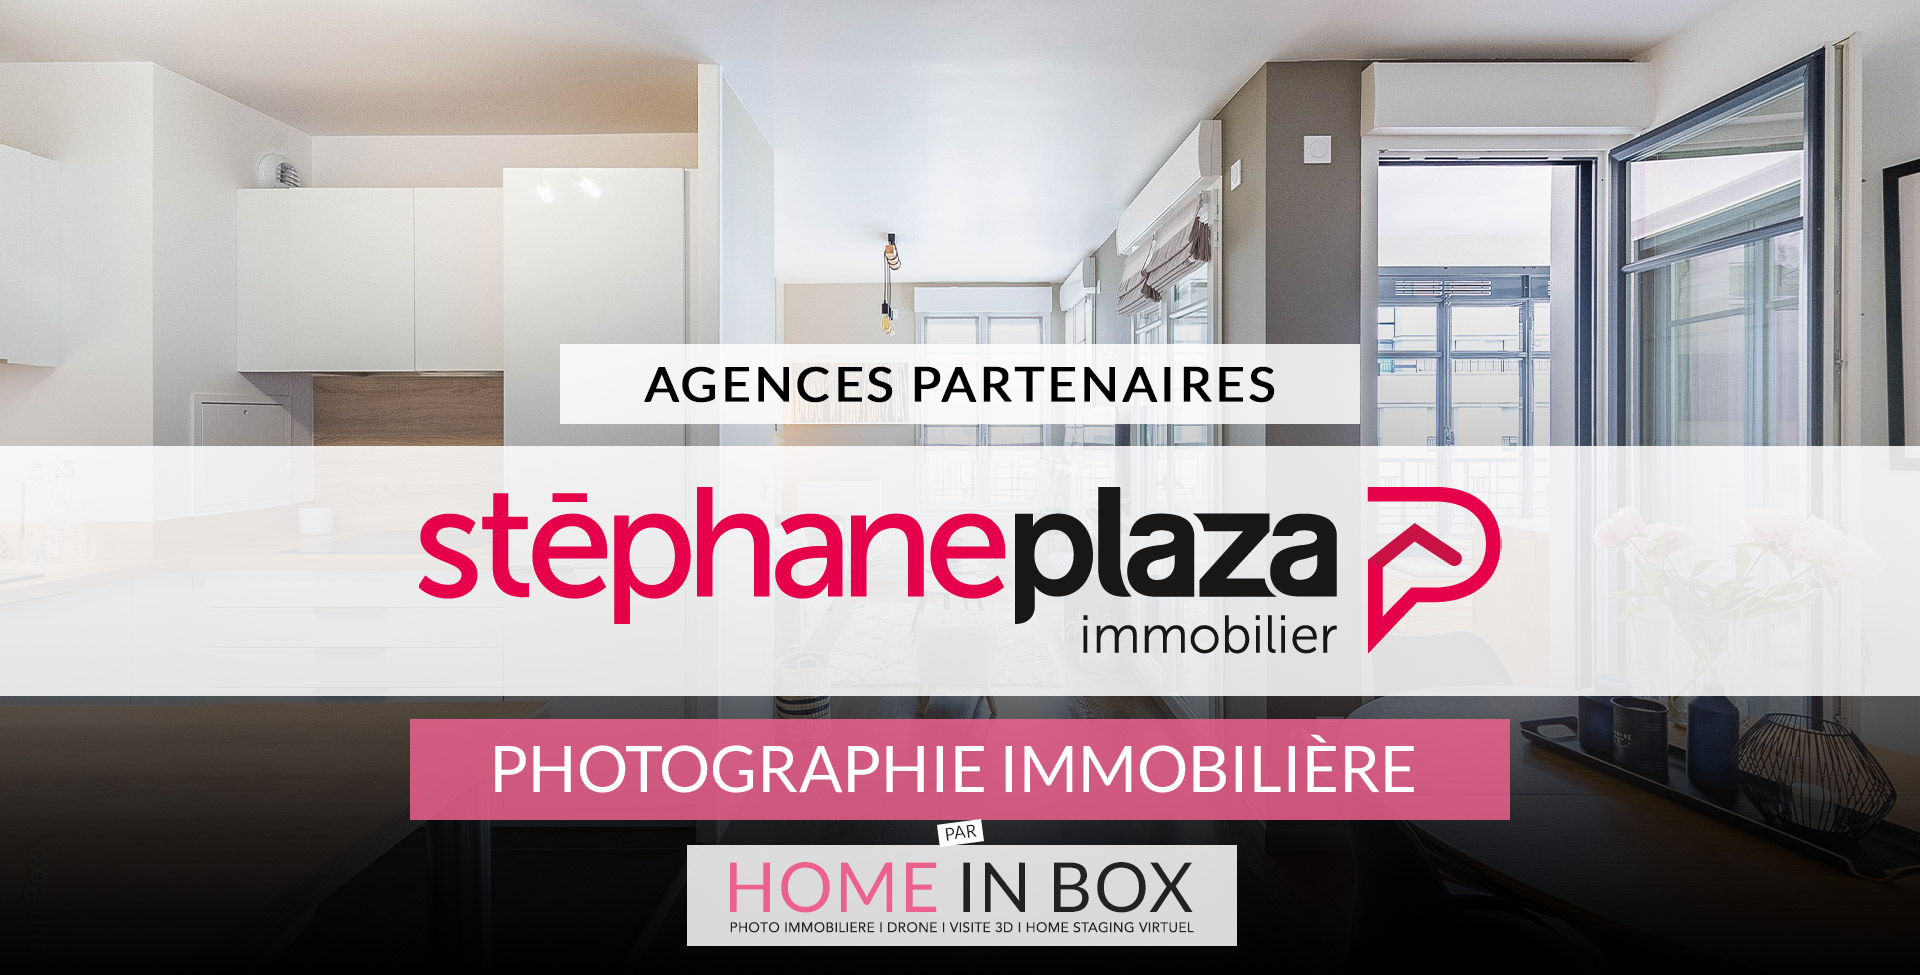 Agences Partenaires Réseau Stéphane Plaza Immobilier | Home in Box